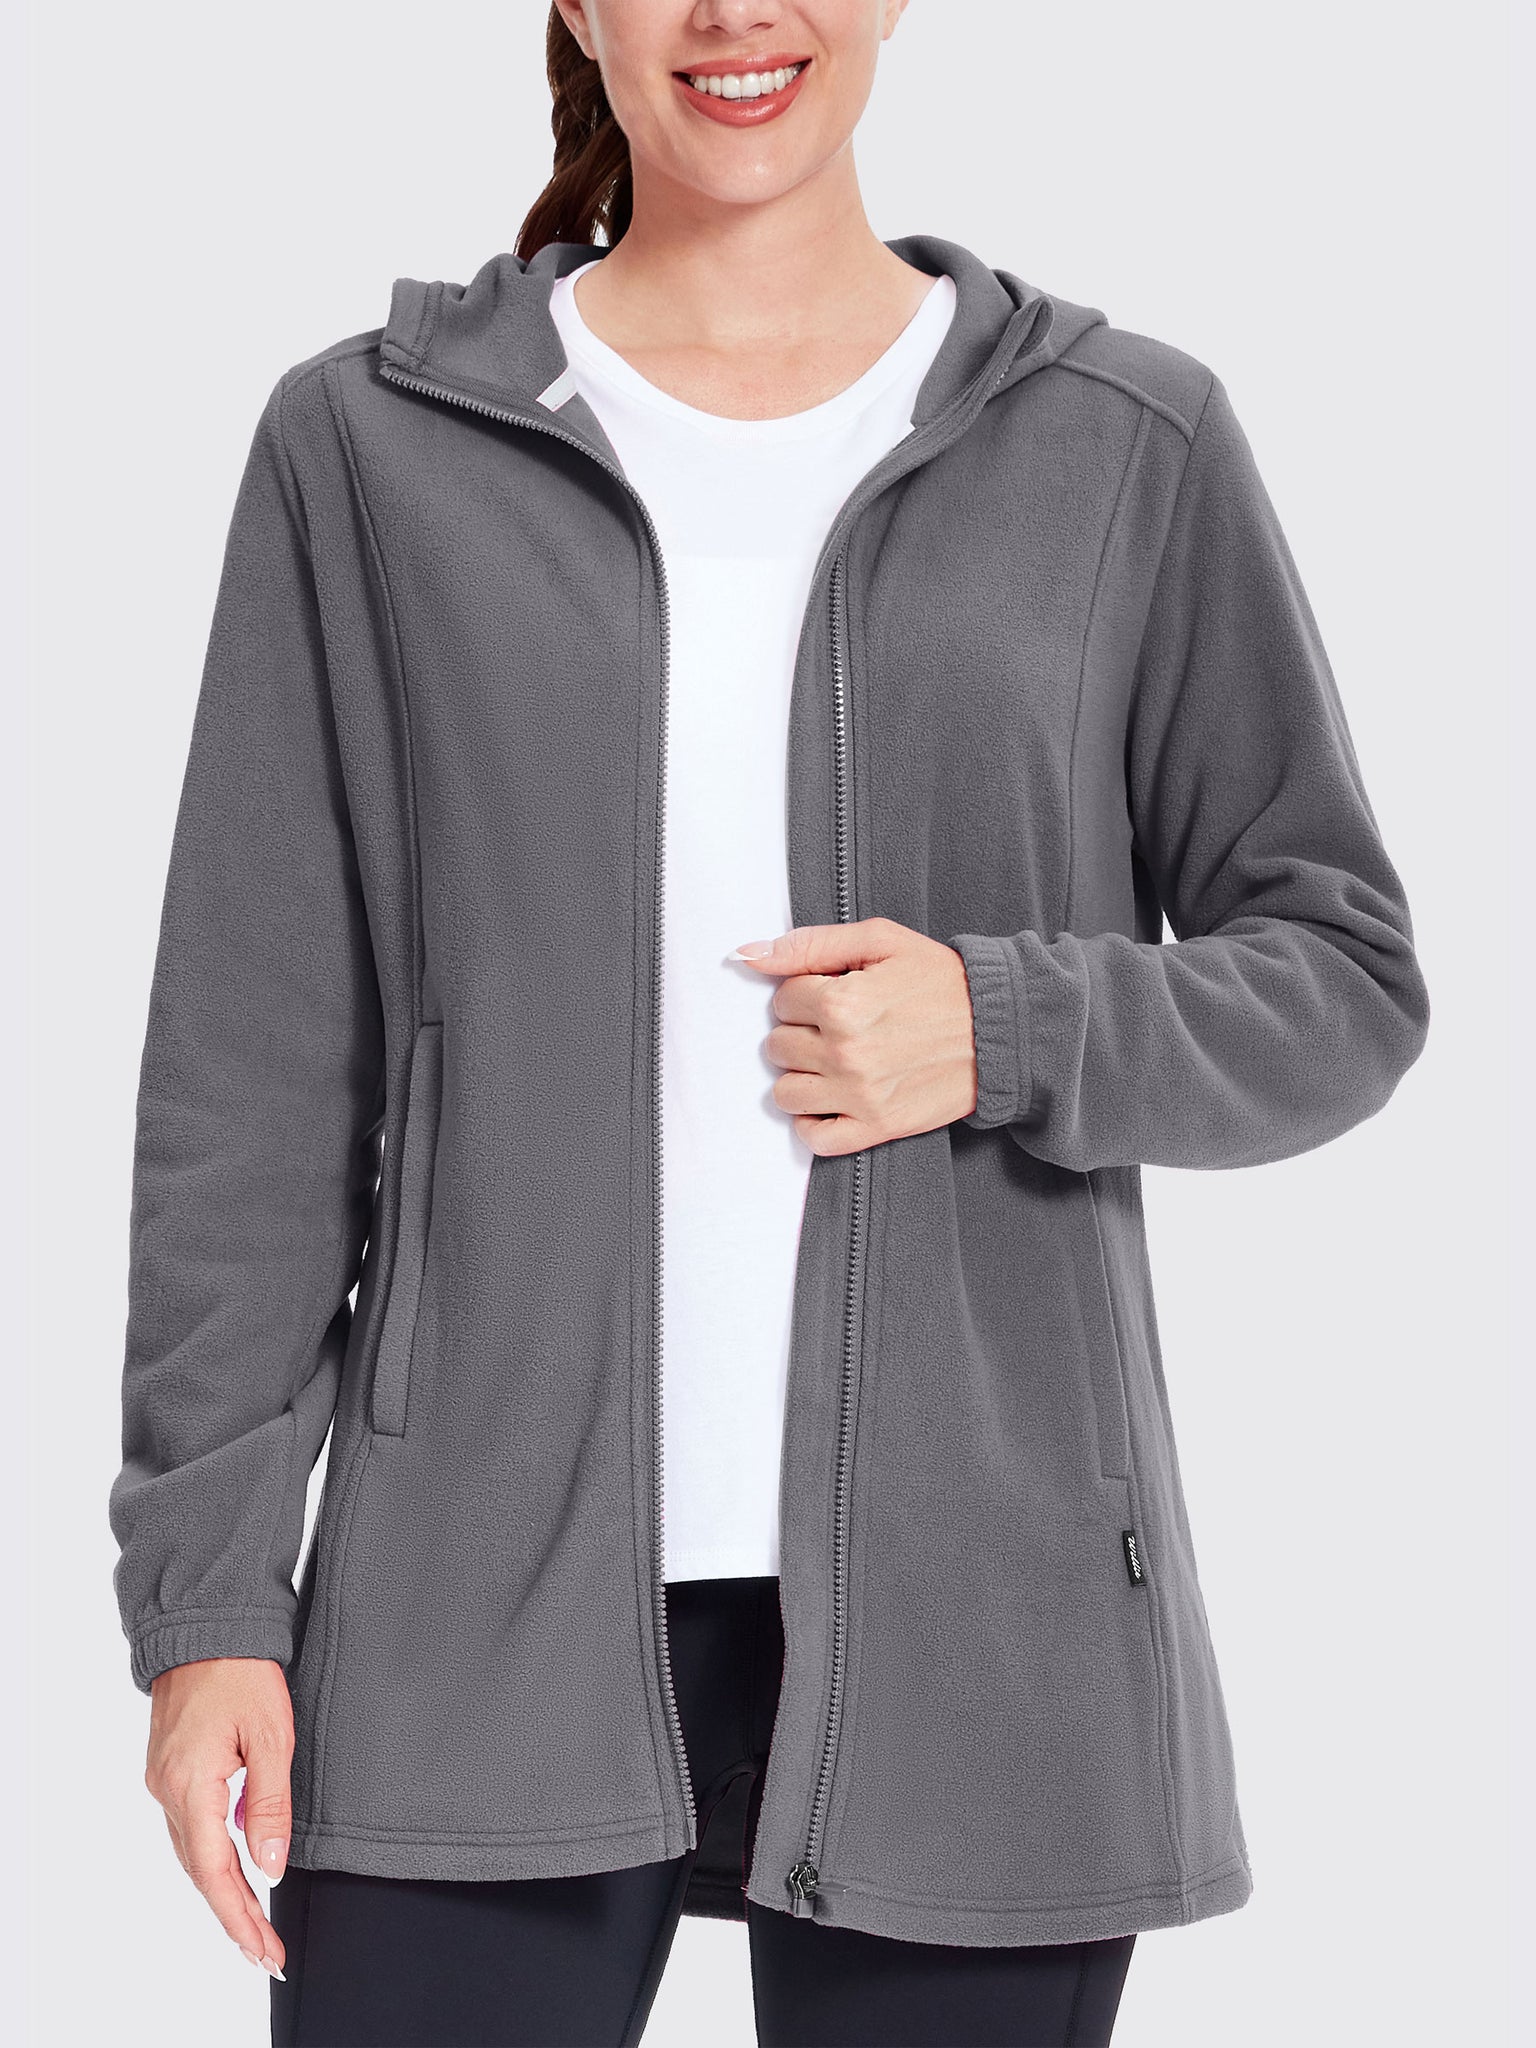 Women's Fleece Full-Zip Jacket DeepGray2